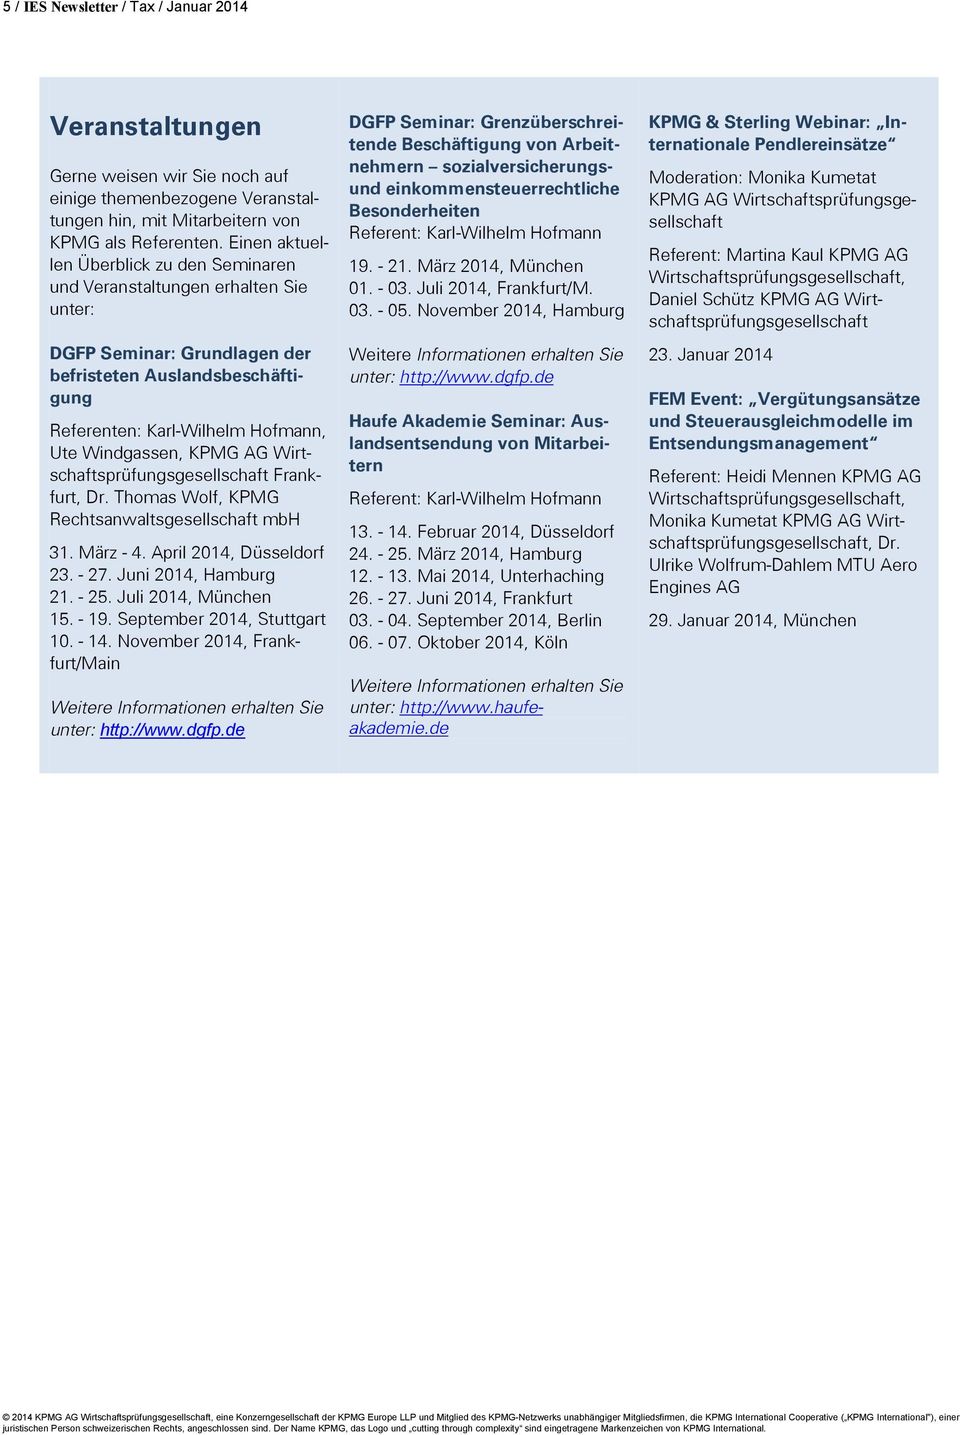 KPMG AG Wirtschaftsprüfungsgesellschaft Frankfurt, Dr. Thomas Wolf, KPMG Rechtsanwaltsgesellschaft mbh 31. März - 4. April 2014, Düsseldorf 23. - 27. Juni 2014, Hamburg 21. - 25.